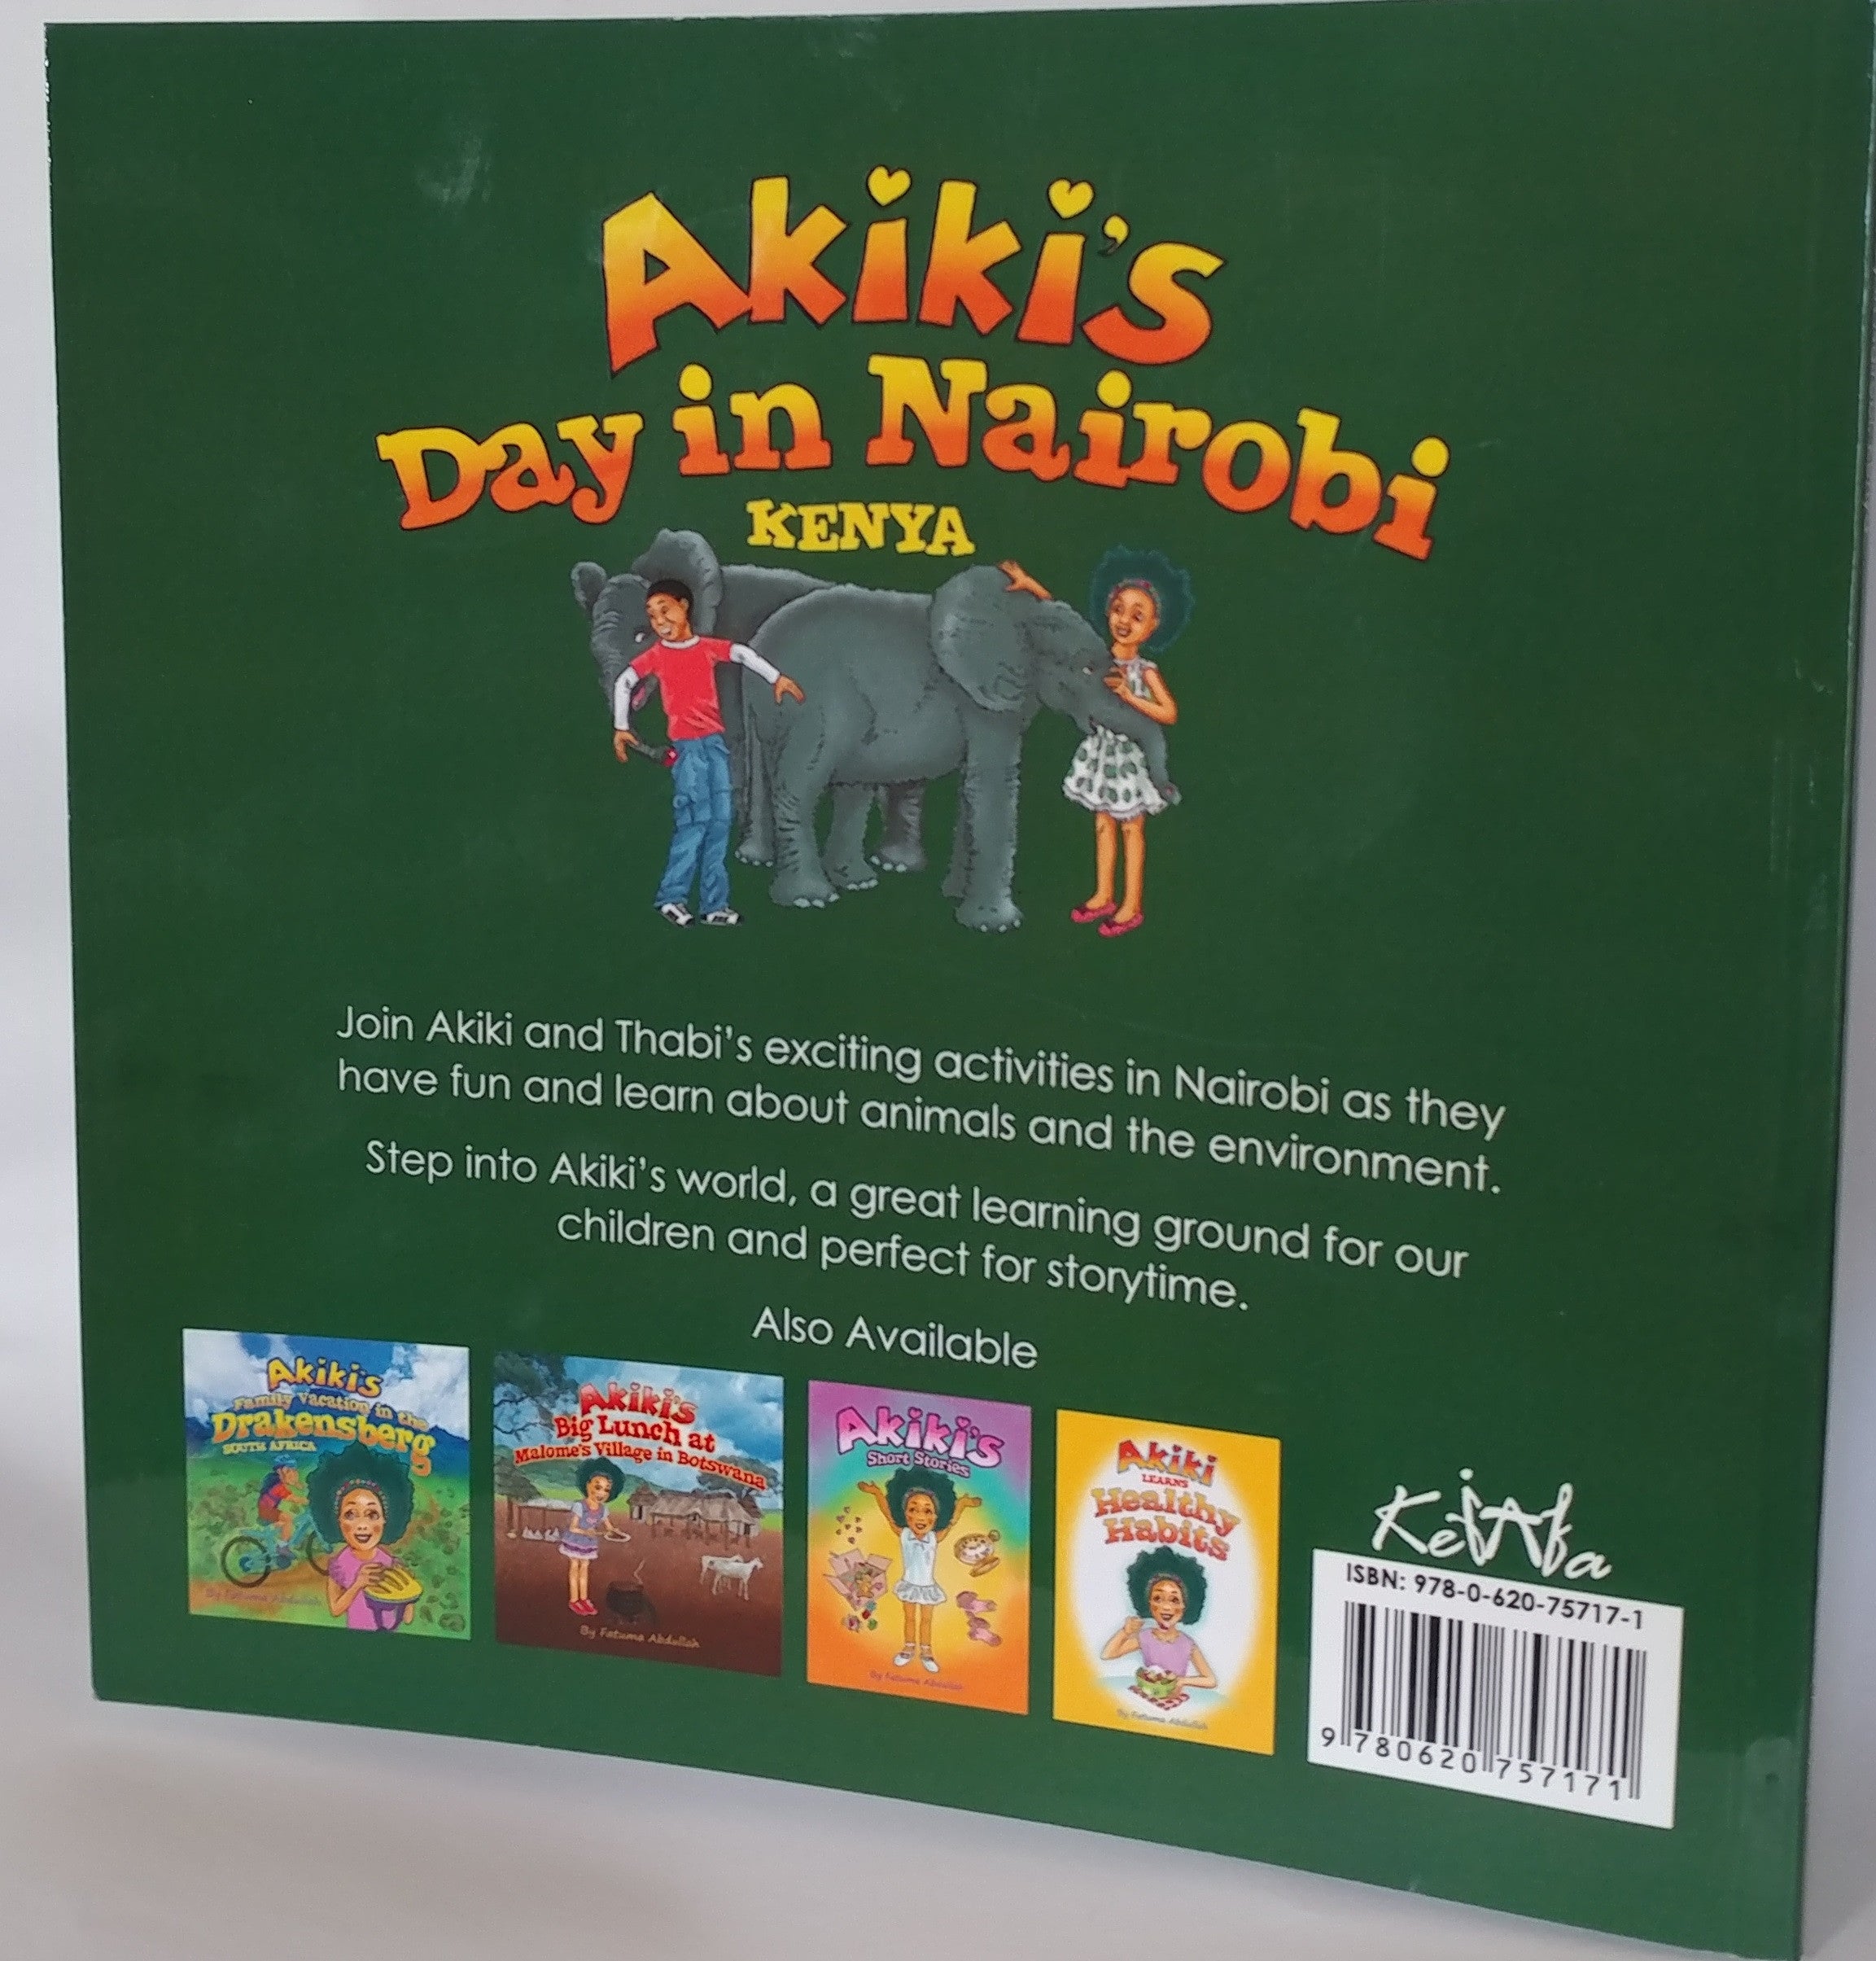 Akiki's Day in Nairobi